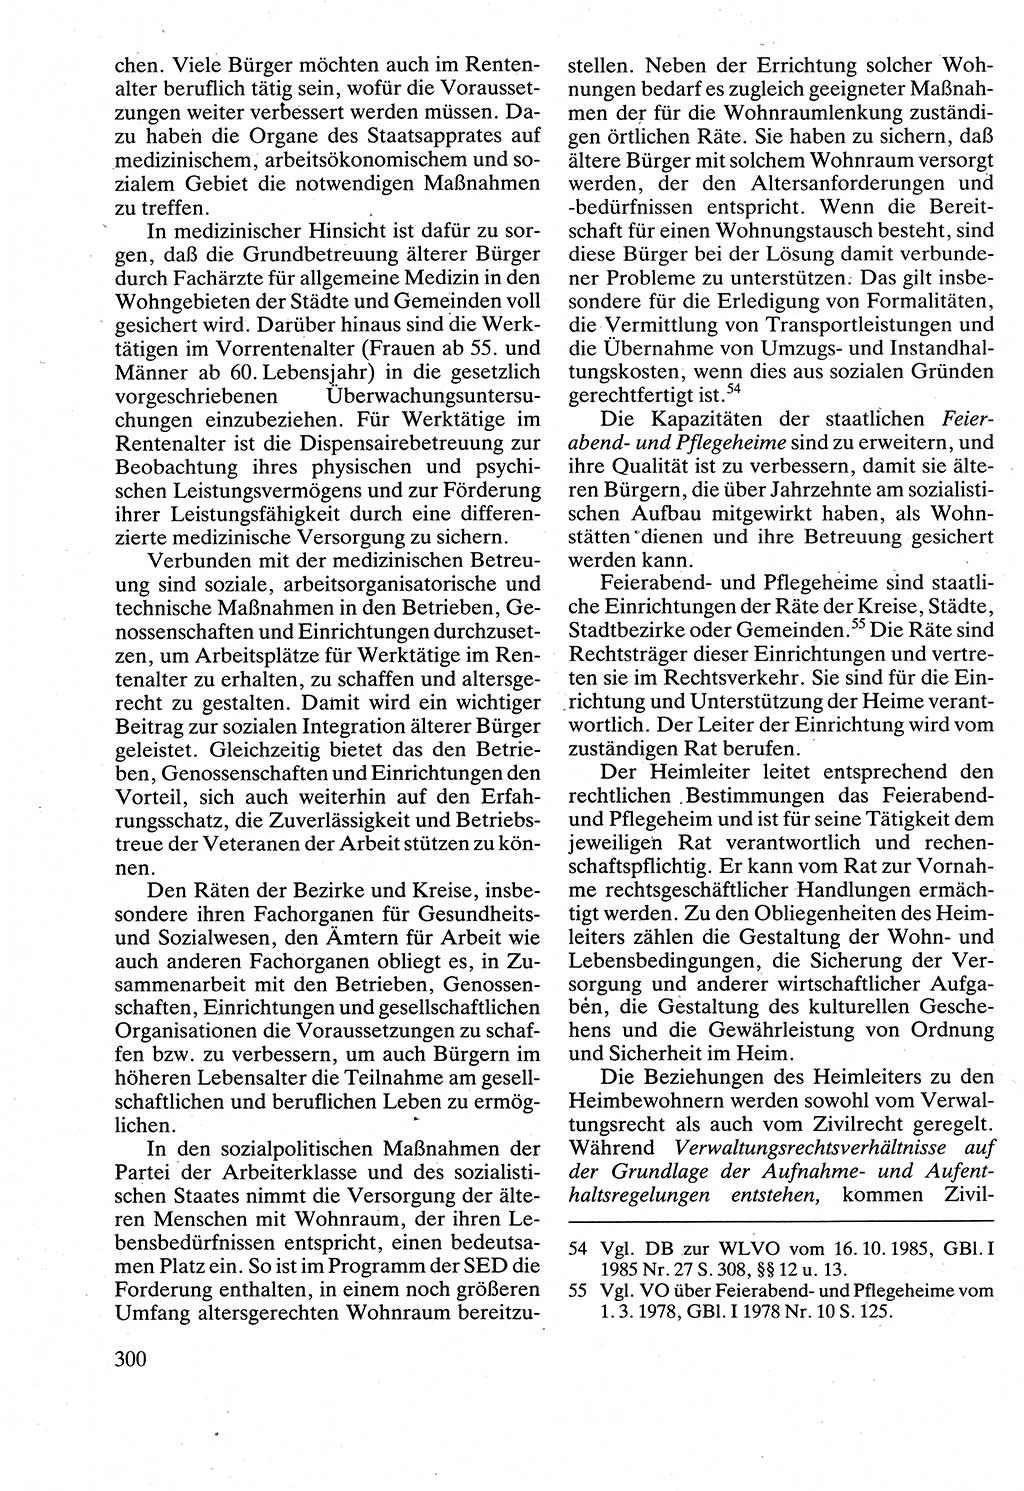 Verwaltungsrecht [Deutsche Demokratische Republik (DDR)], Lehrbuch 1988, Seite 300 (Verw.-R. DDR Lb. 1988, S. 300)